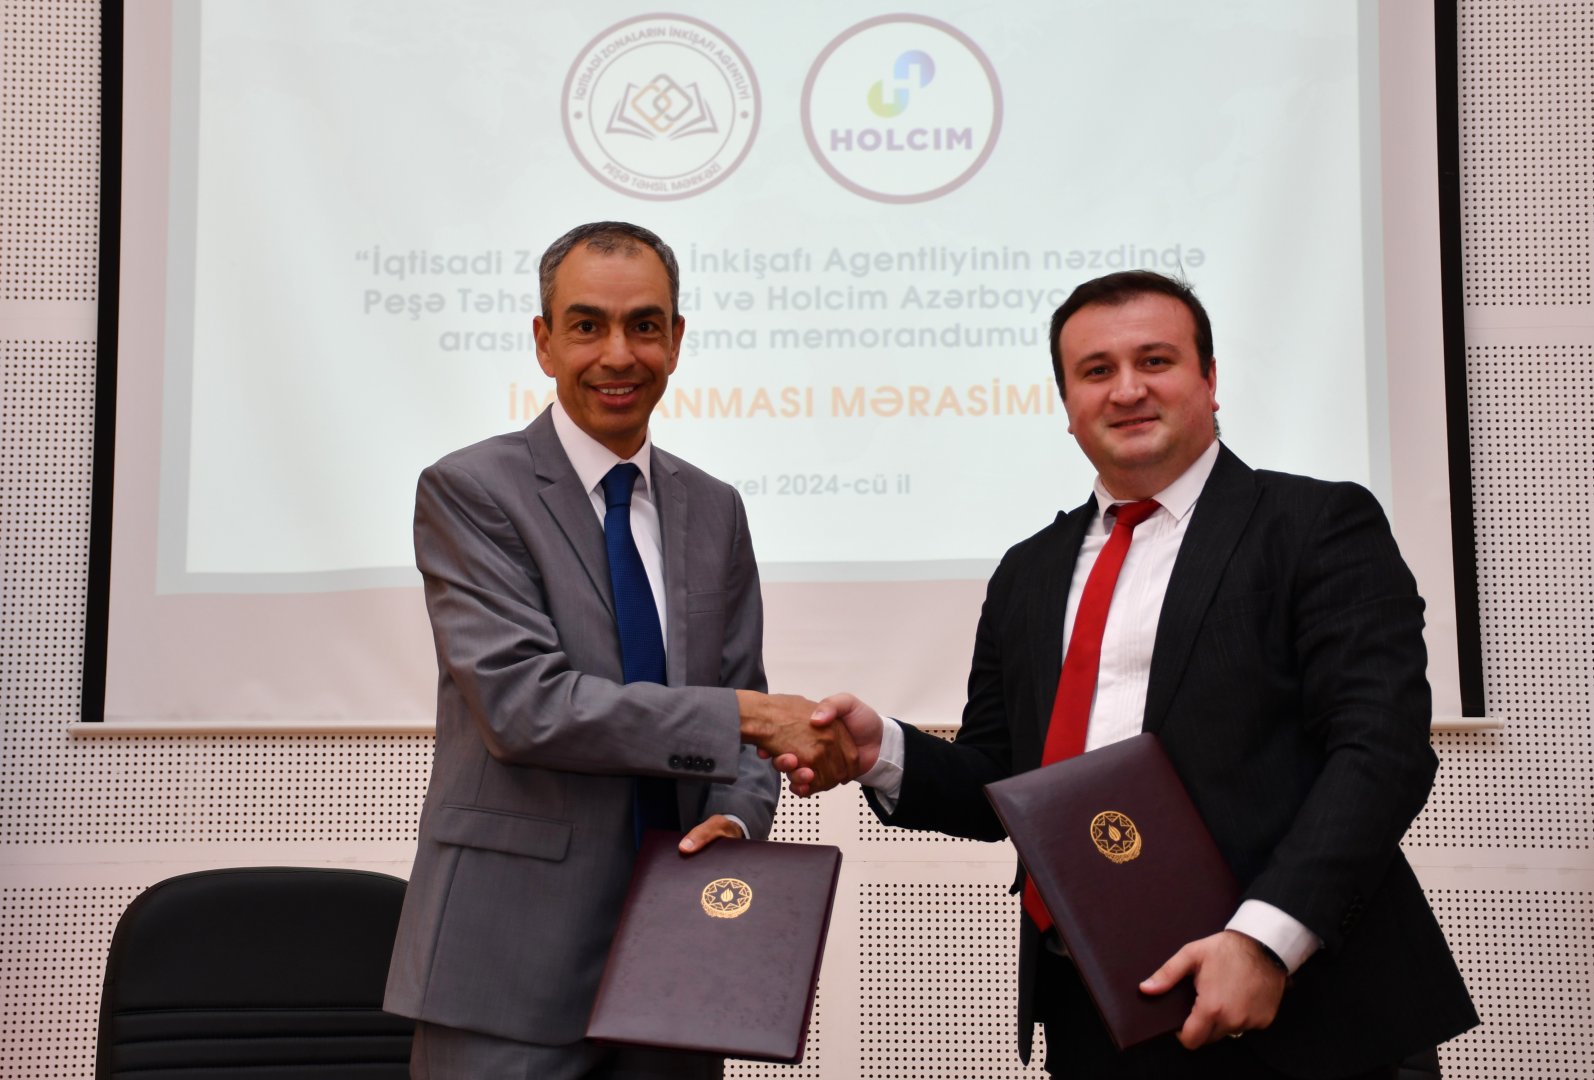 Агентство по развитию экономических зон и азербайджанская компания подписали меморандум